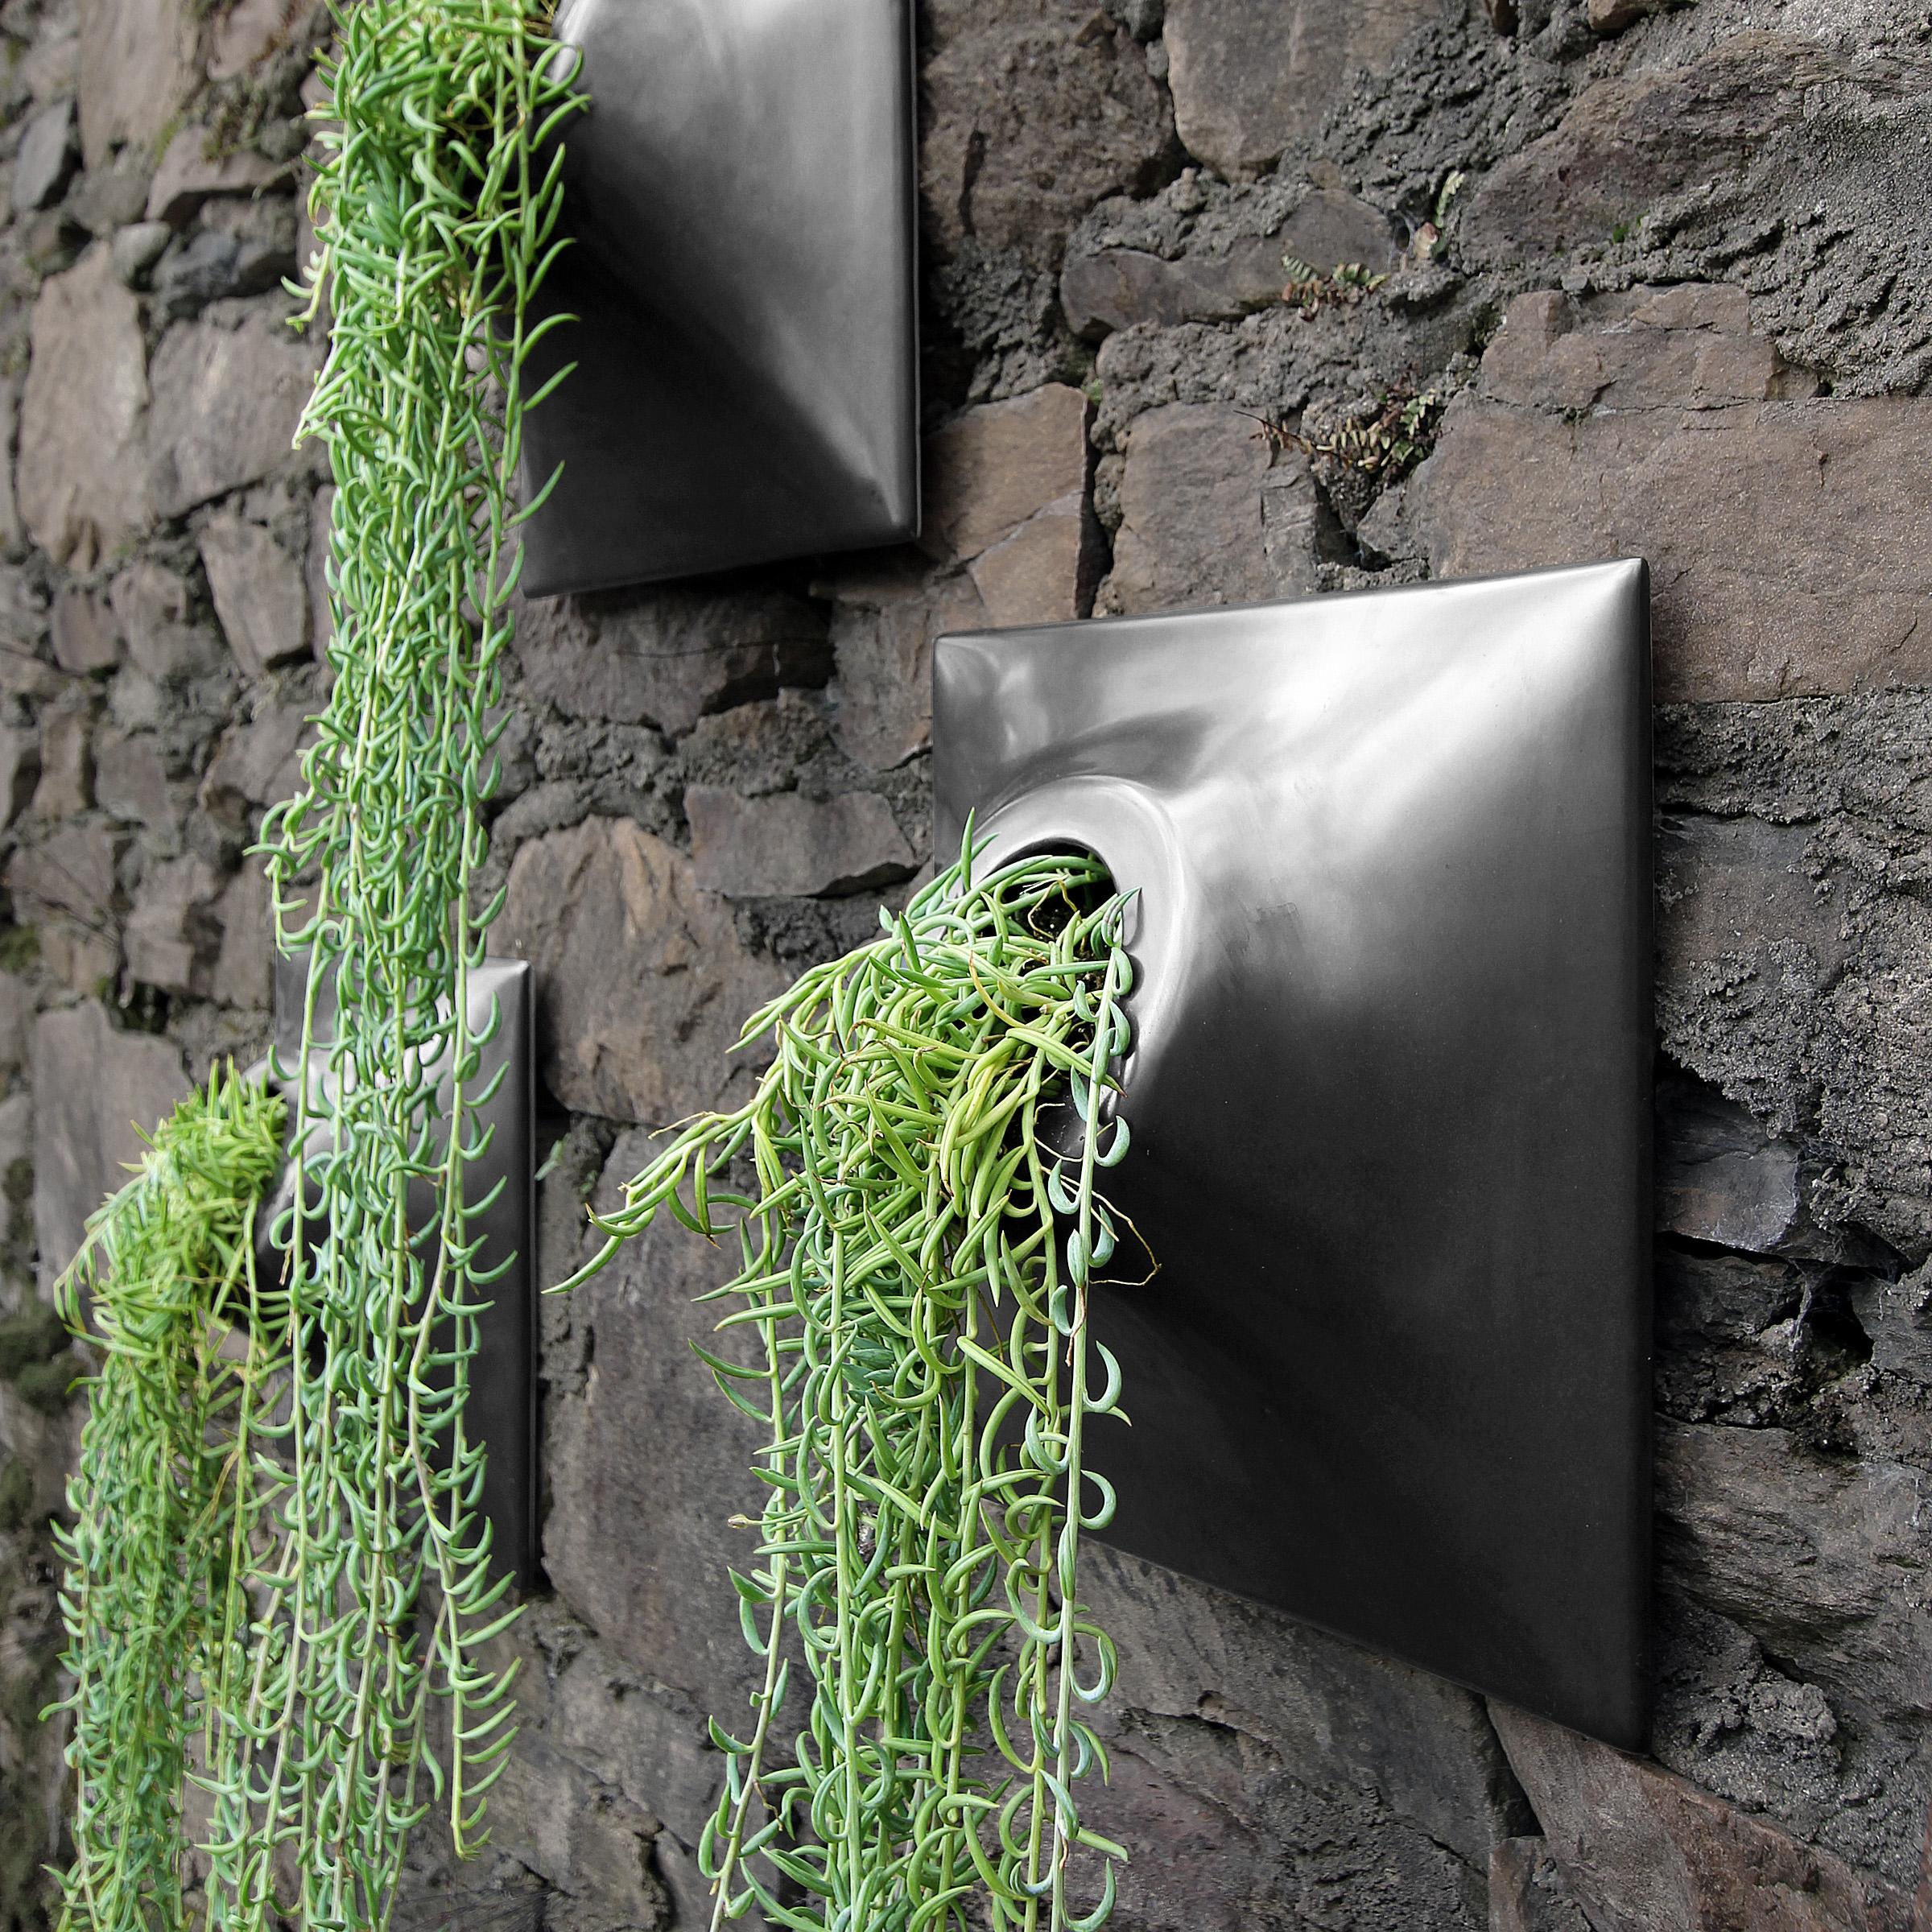 Modern Black Wall Planter, Plant Wall Sculpture, Living Decor, Node 15